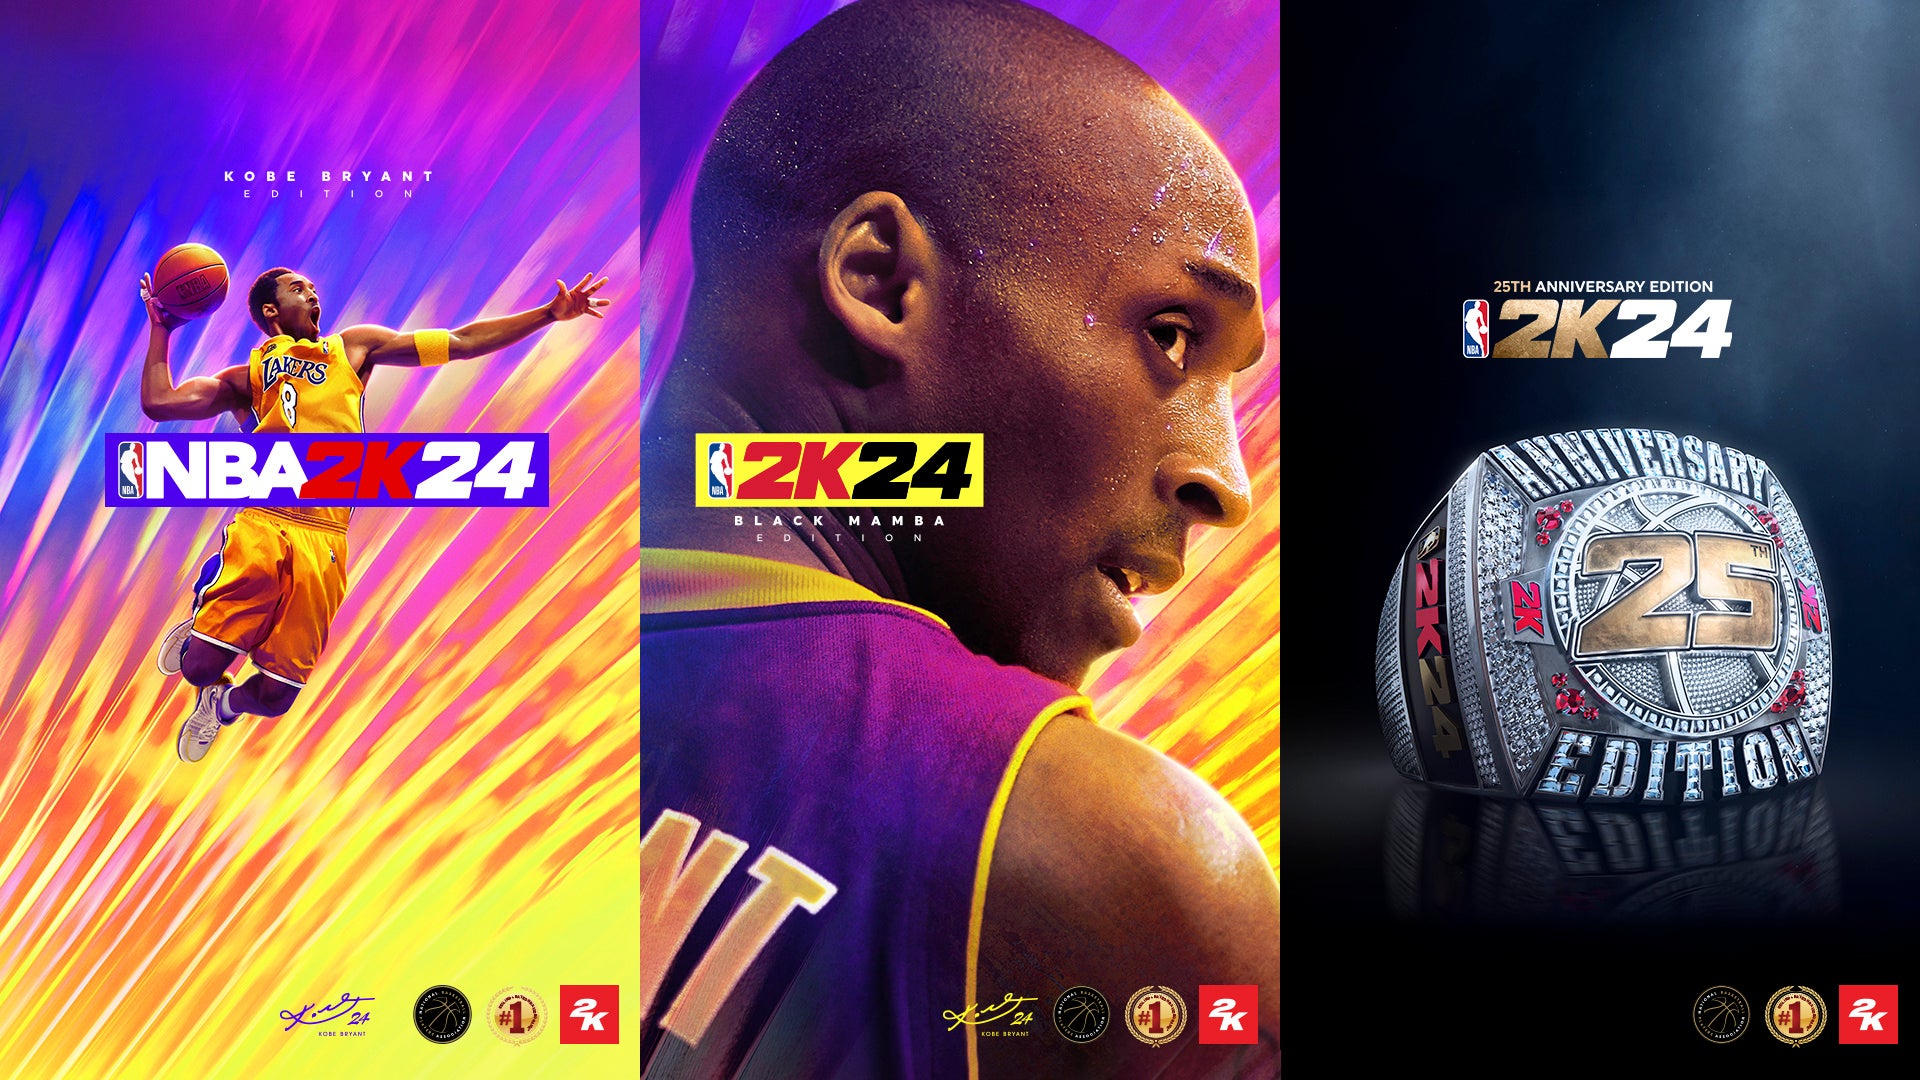 「コートで、会おう。」最高のレジェンド、ブラック・マンバことコービー・ブライアントが『NBA® 2K24』最新作のカバー選手として登場